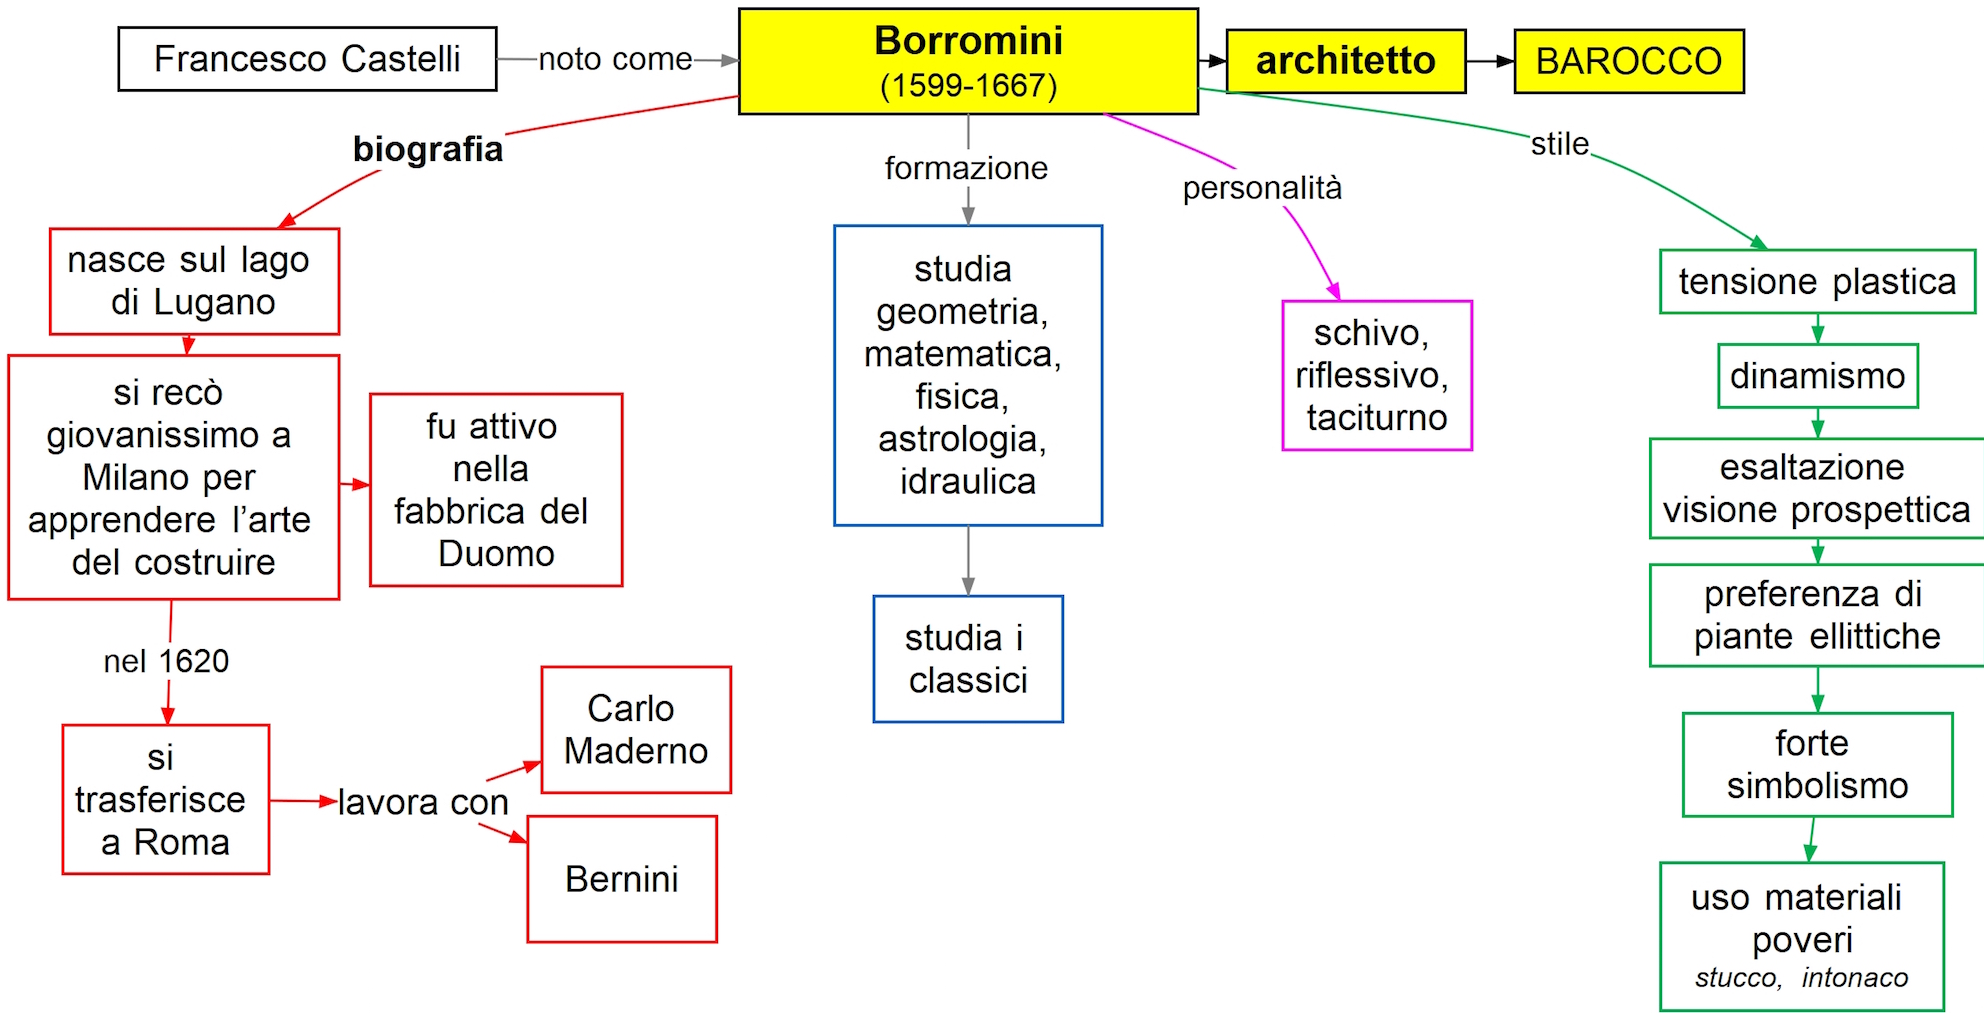 Borromini biografia